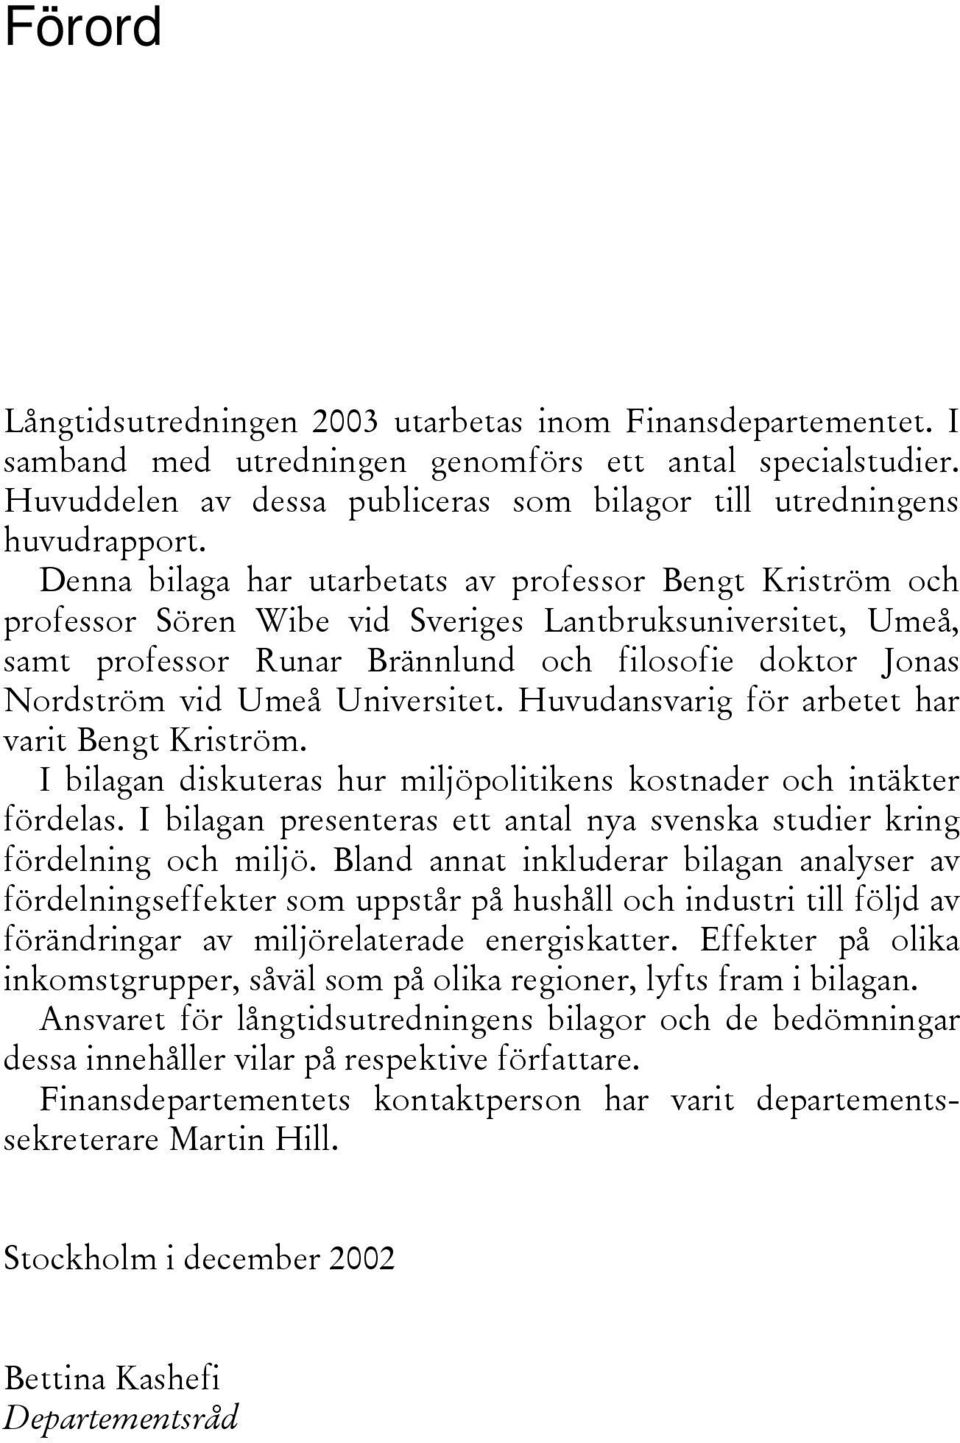 Denna bilaga har utarbetats av professor Bengt Kriström och professor Sören Wibe vid Sveriges Lantbruksuniversitet, Umeå, samt professor Runar Brännlund och filosofie doktor Jonas Nordström vid Umeå